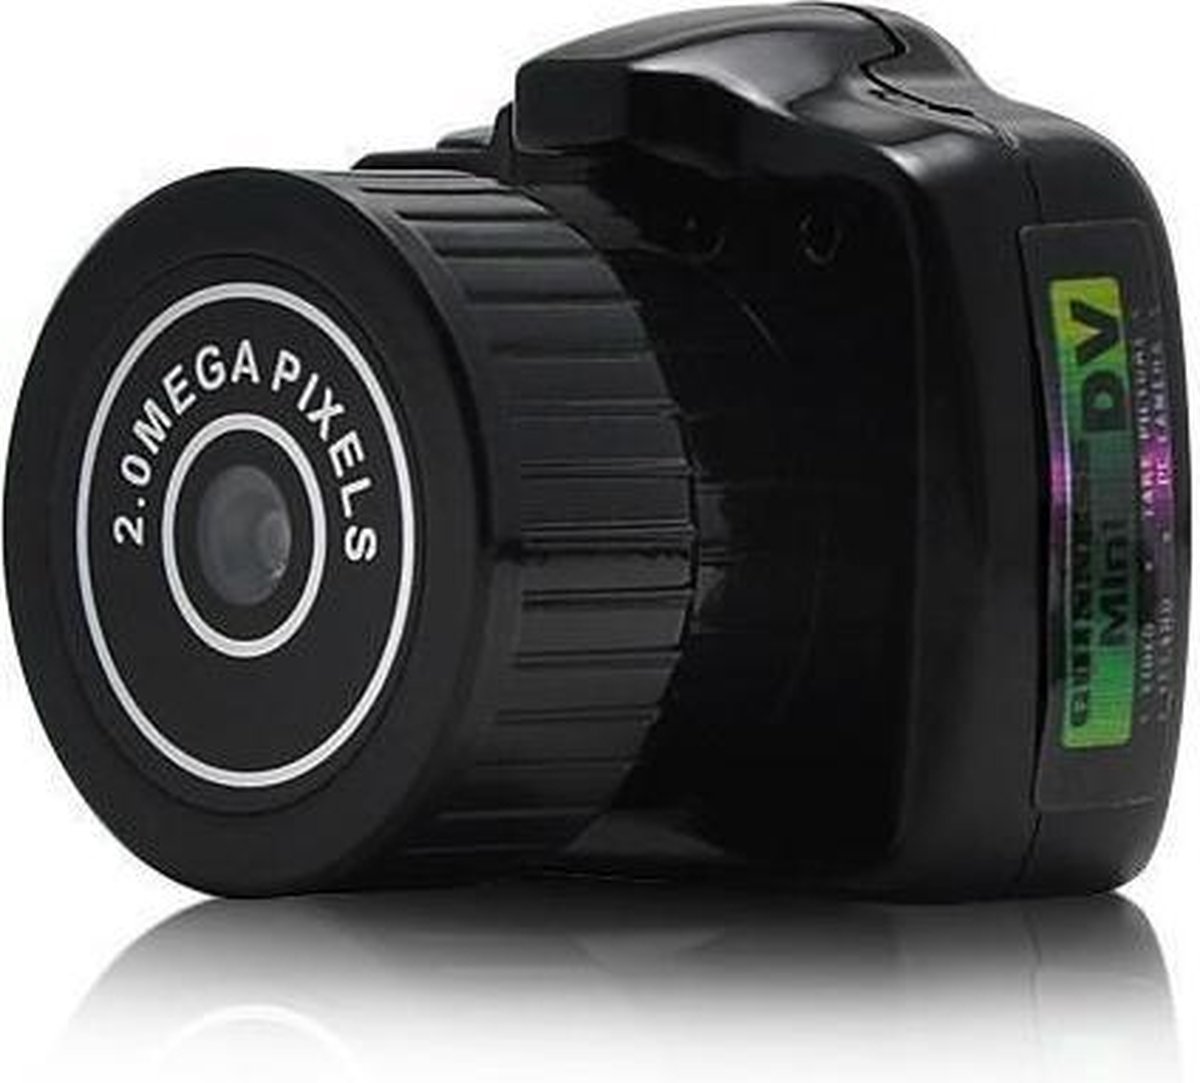 spy camera recorder wireless key biscayne